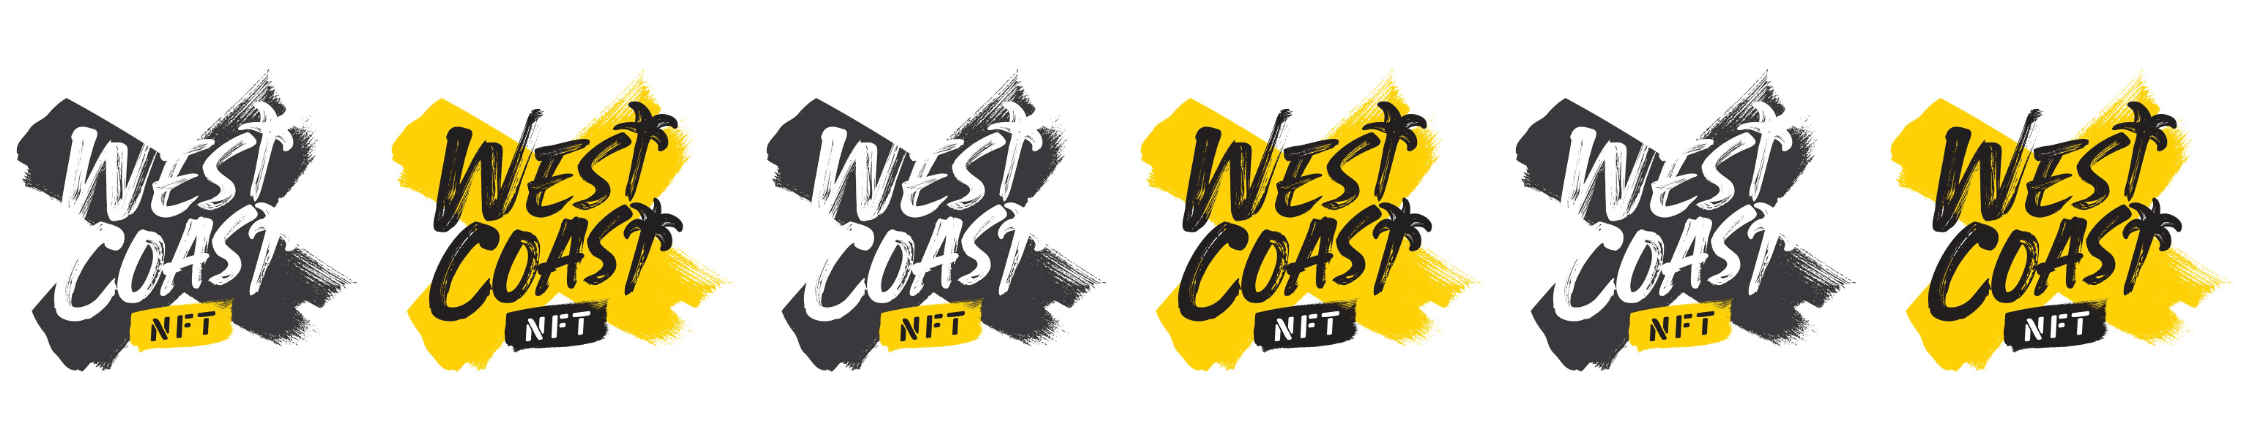 WestcoastNFT banner